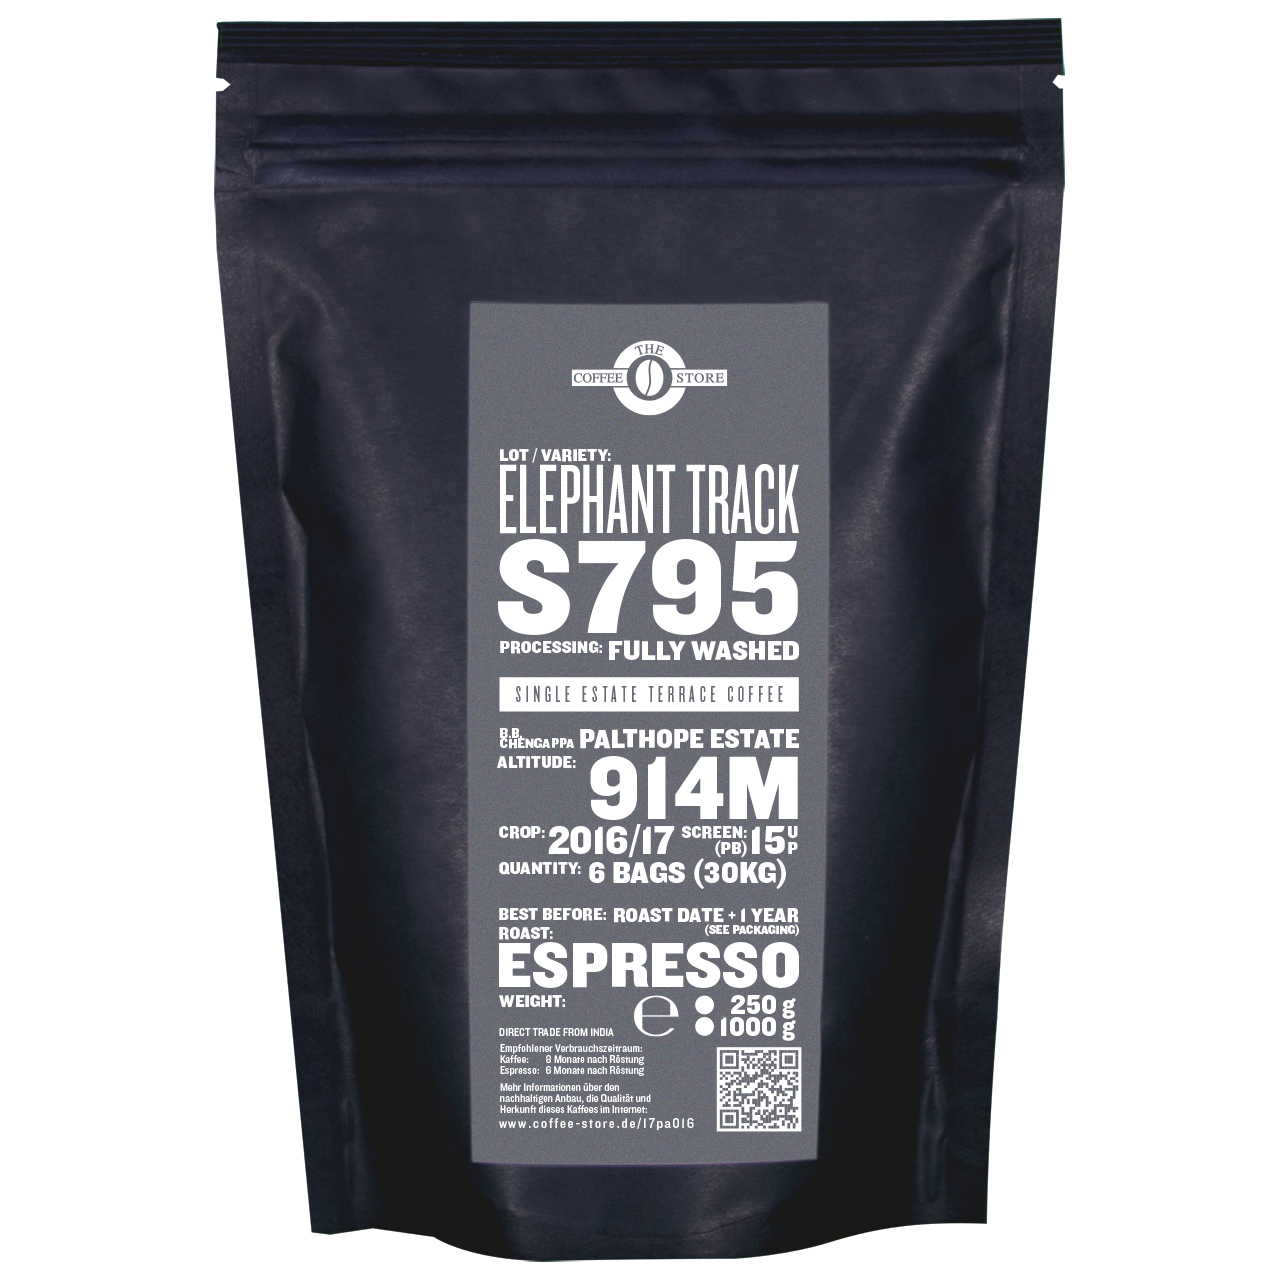 Elephant Track, S795 - Espressoröstung